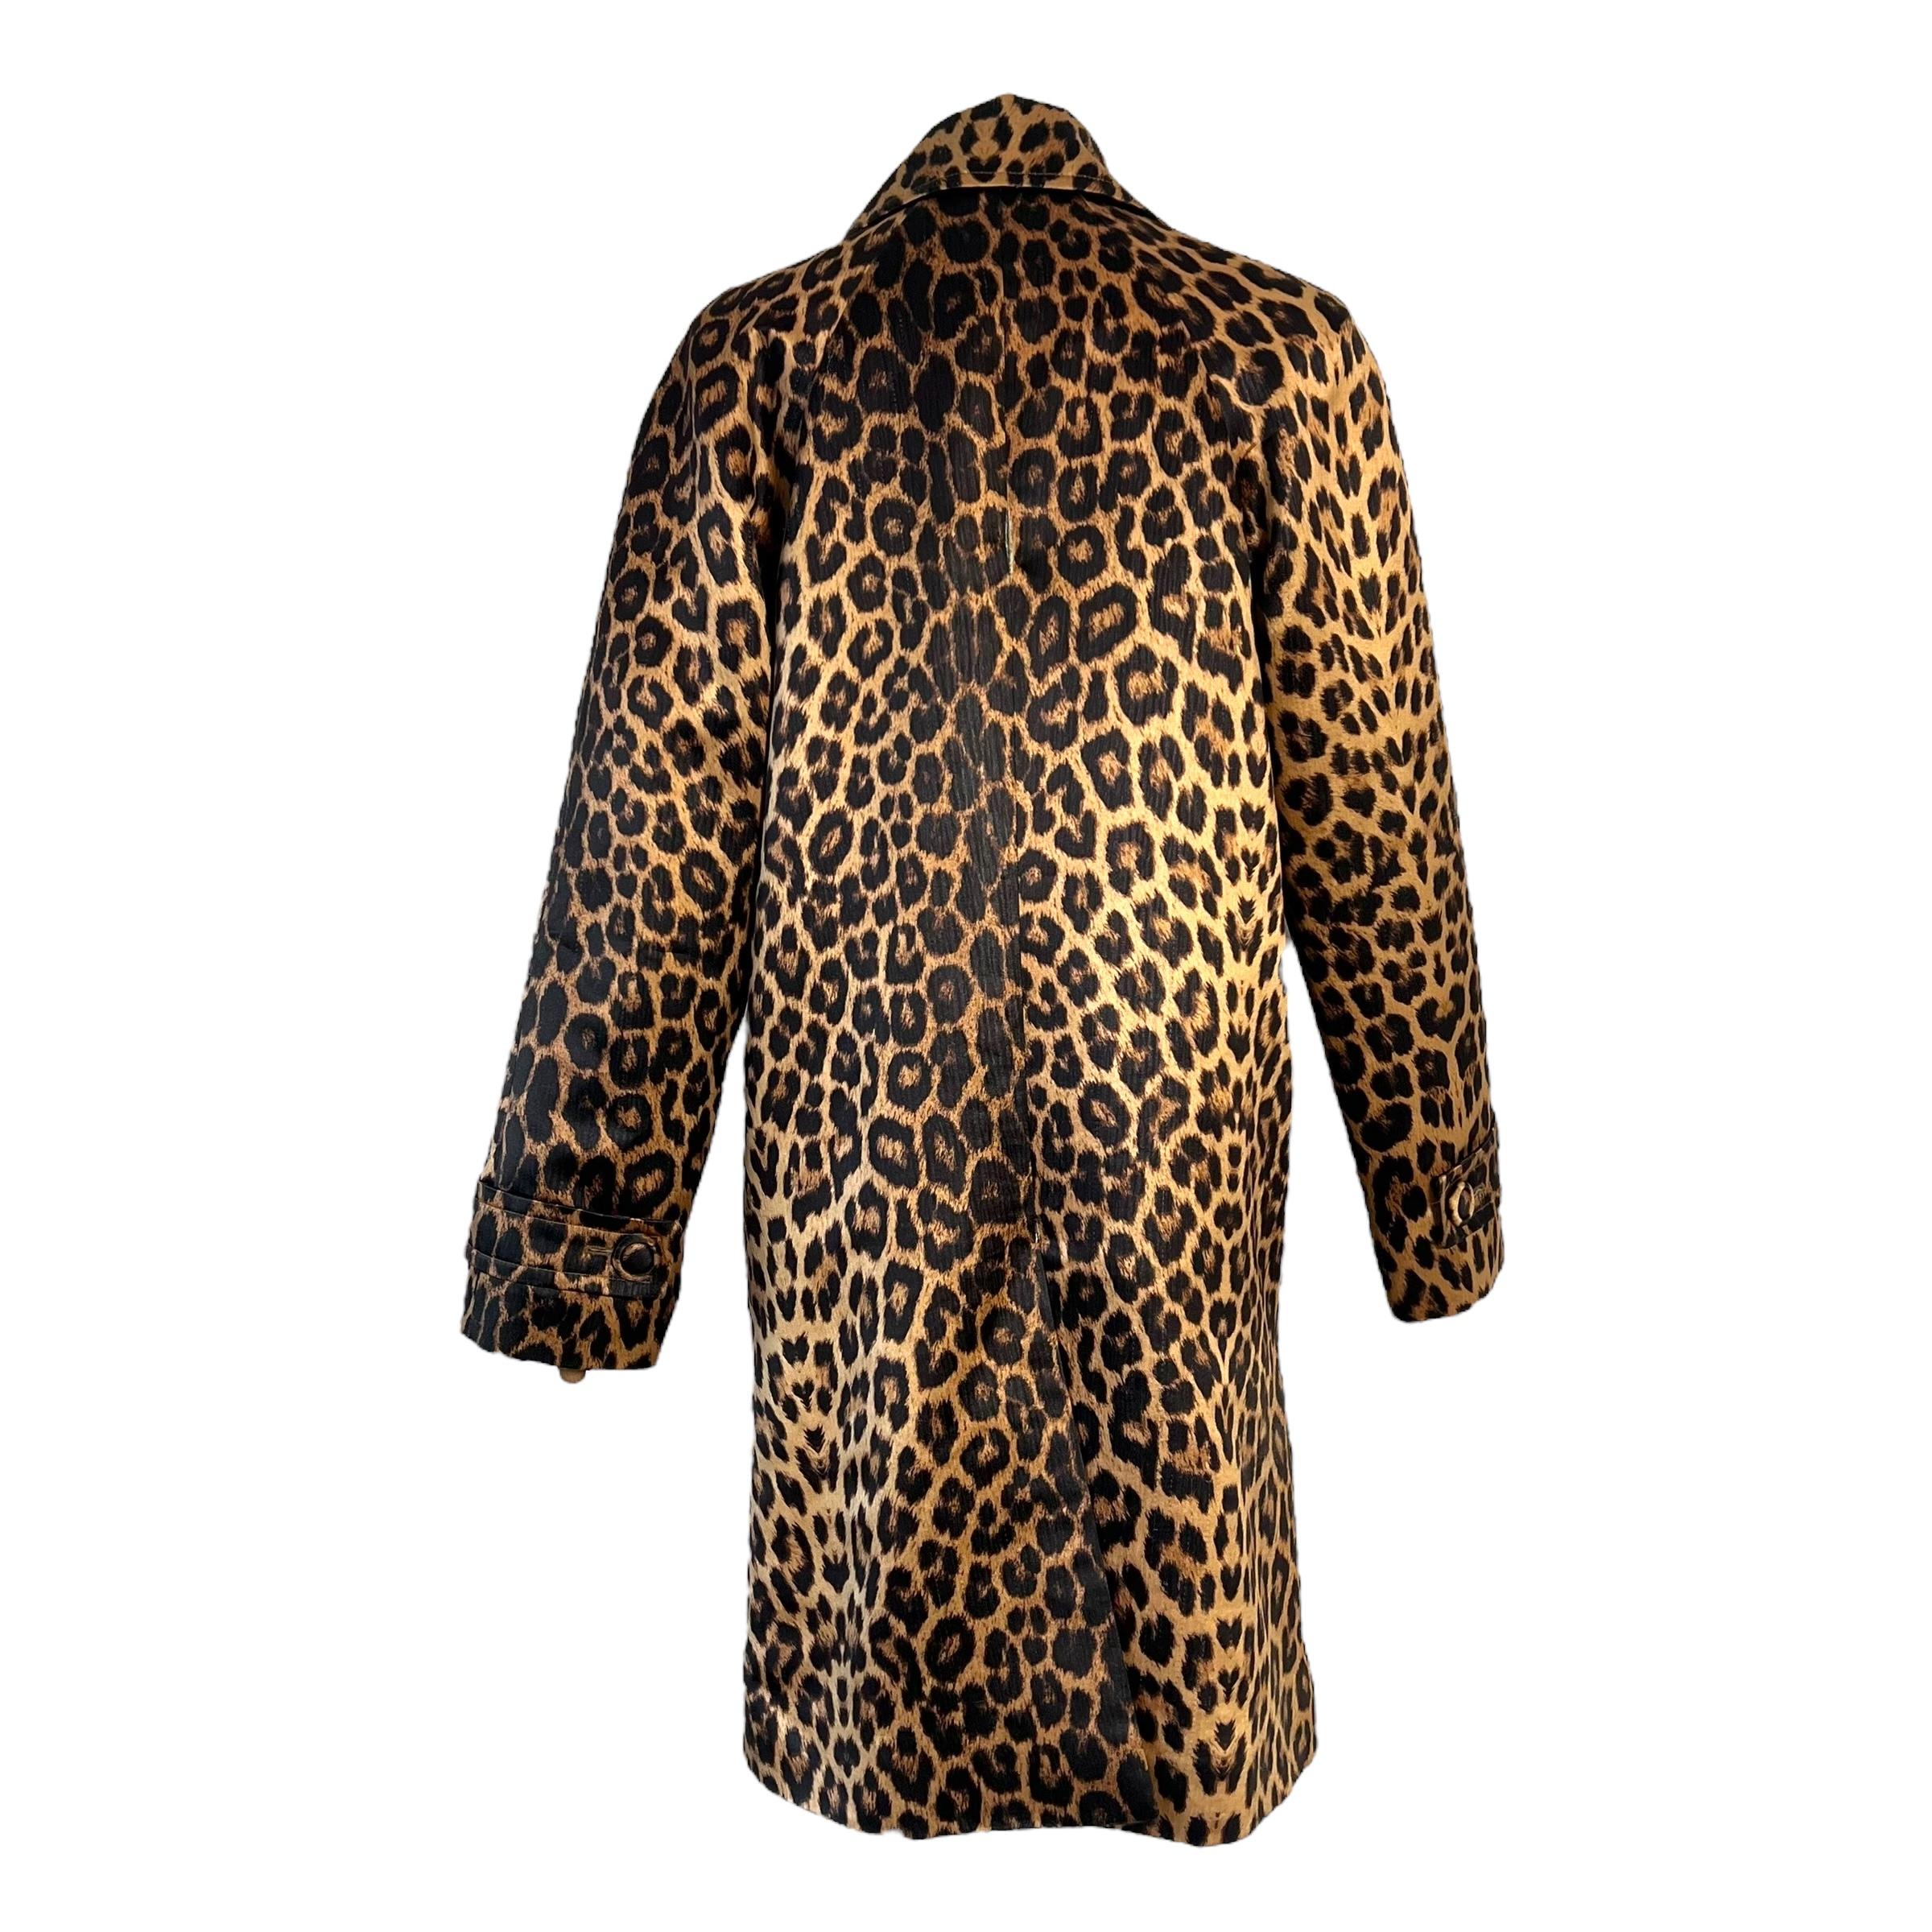 Women's or Men's Yves Saint Laurent 90's leopard coat